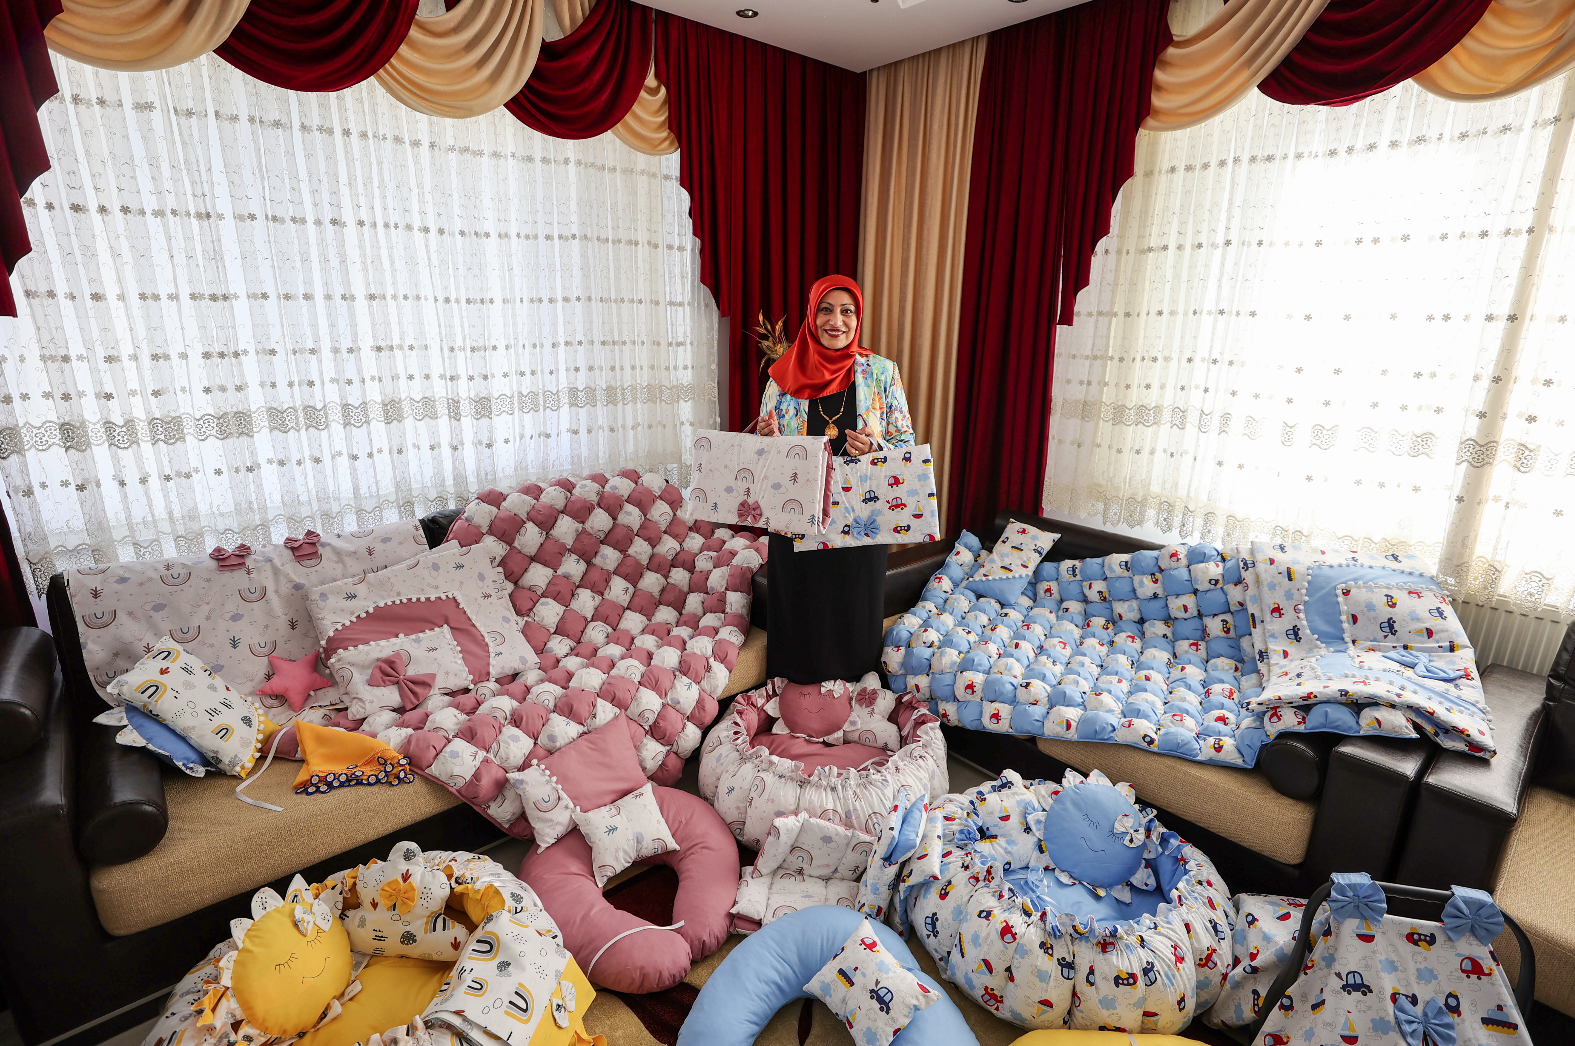 Evinin odasını tekstil atölyesine çeviren kadın yurt dışına da ürün gönderiyor